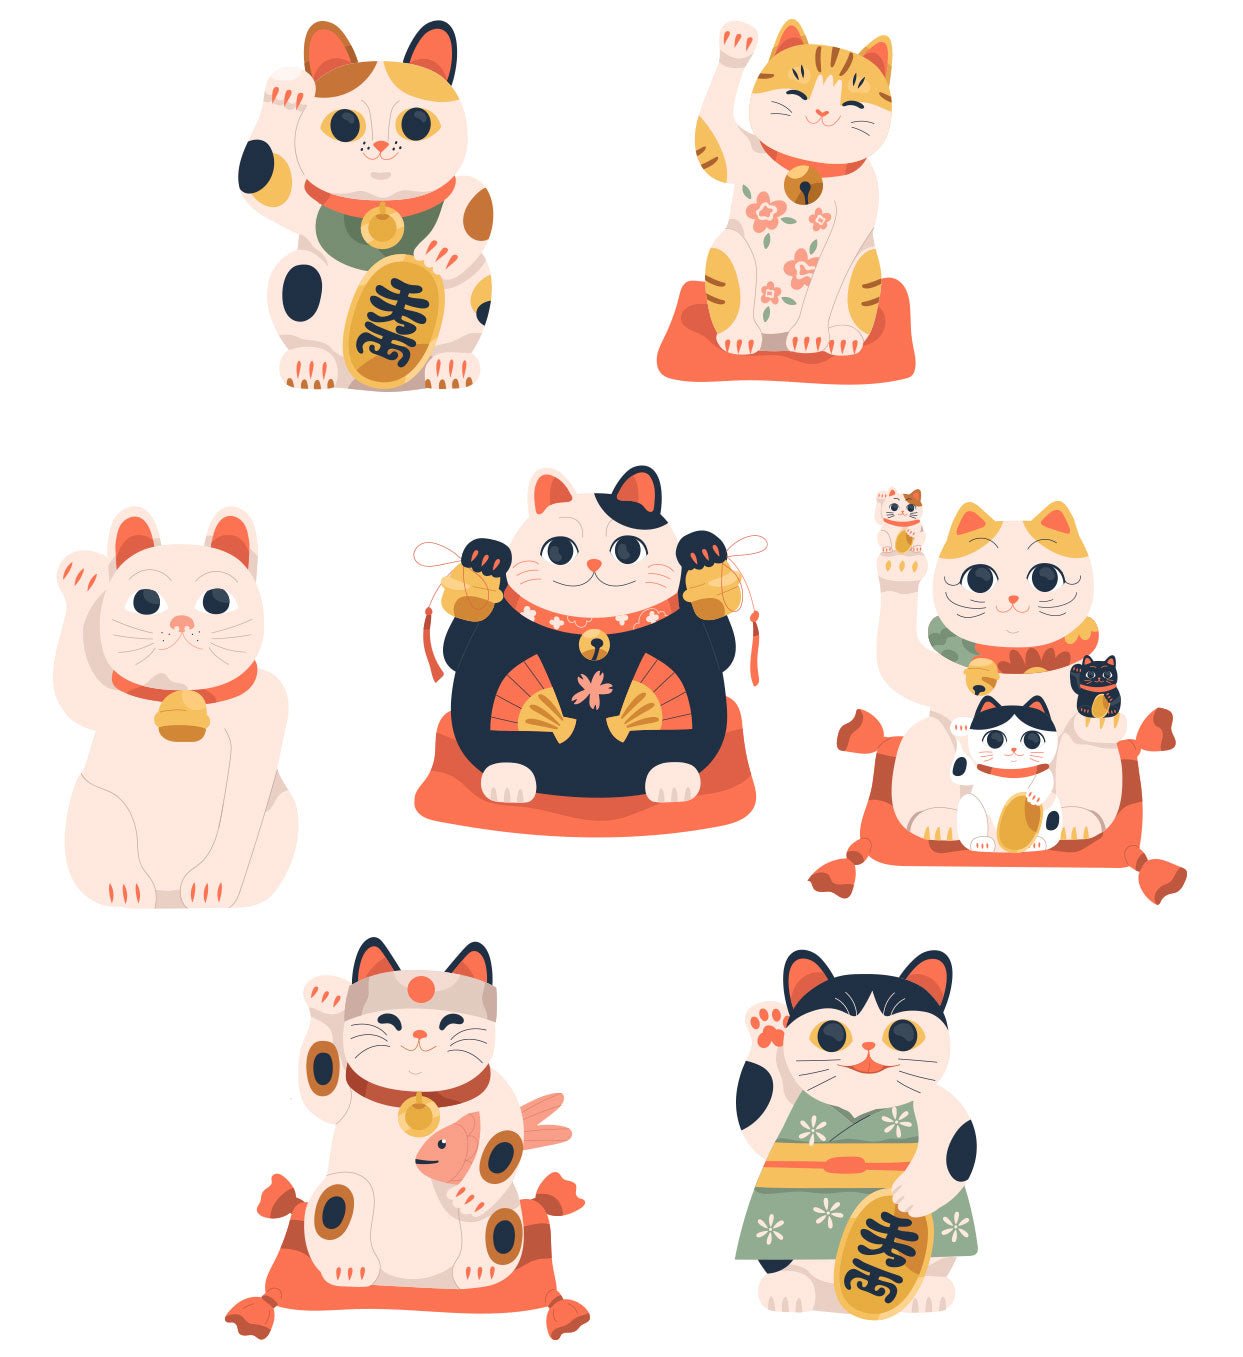 Set de 7 Stickers Reutilizables: Maneki-neko, Gatos de la suerte - Tienda Pasquín